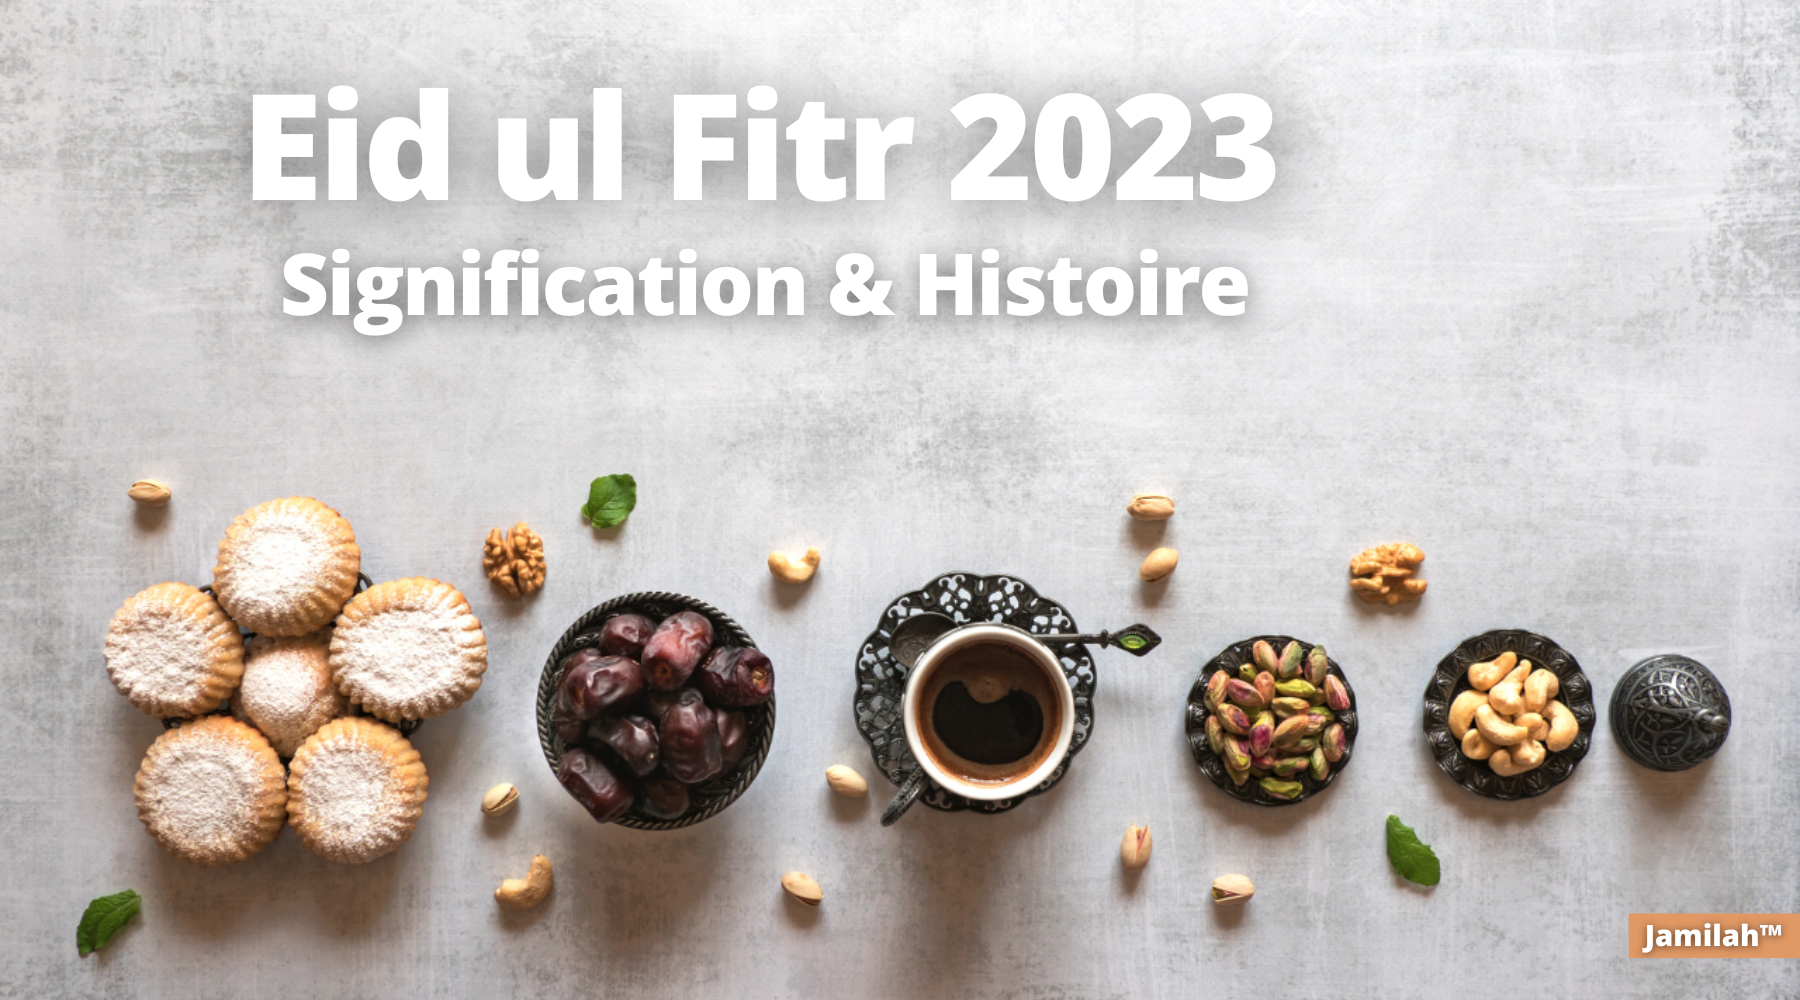 Eid ul Fitr 2023, signification, histoire, portée et faits